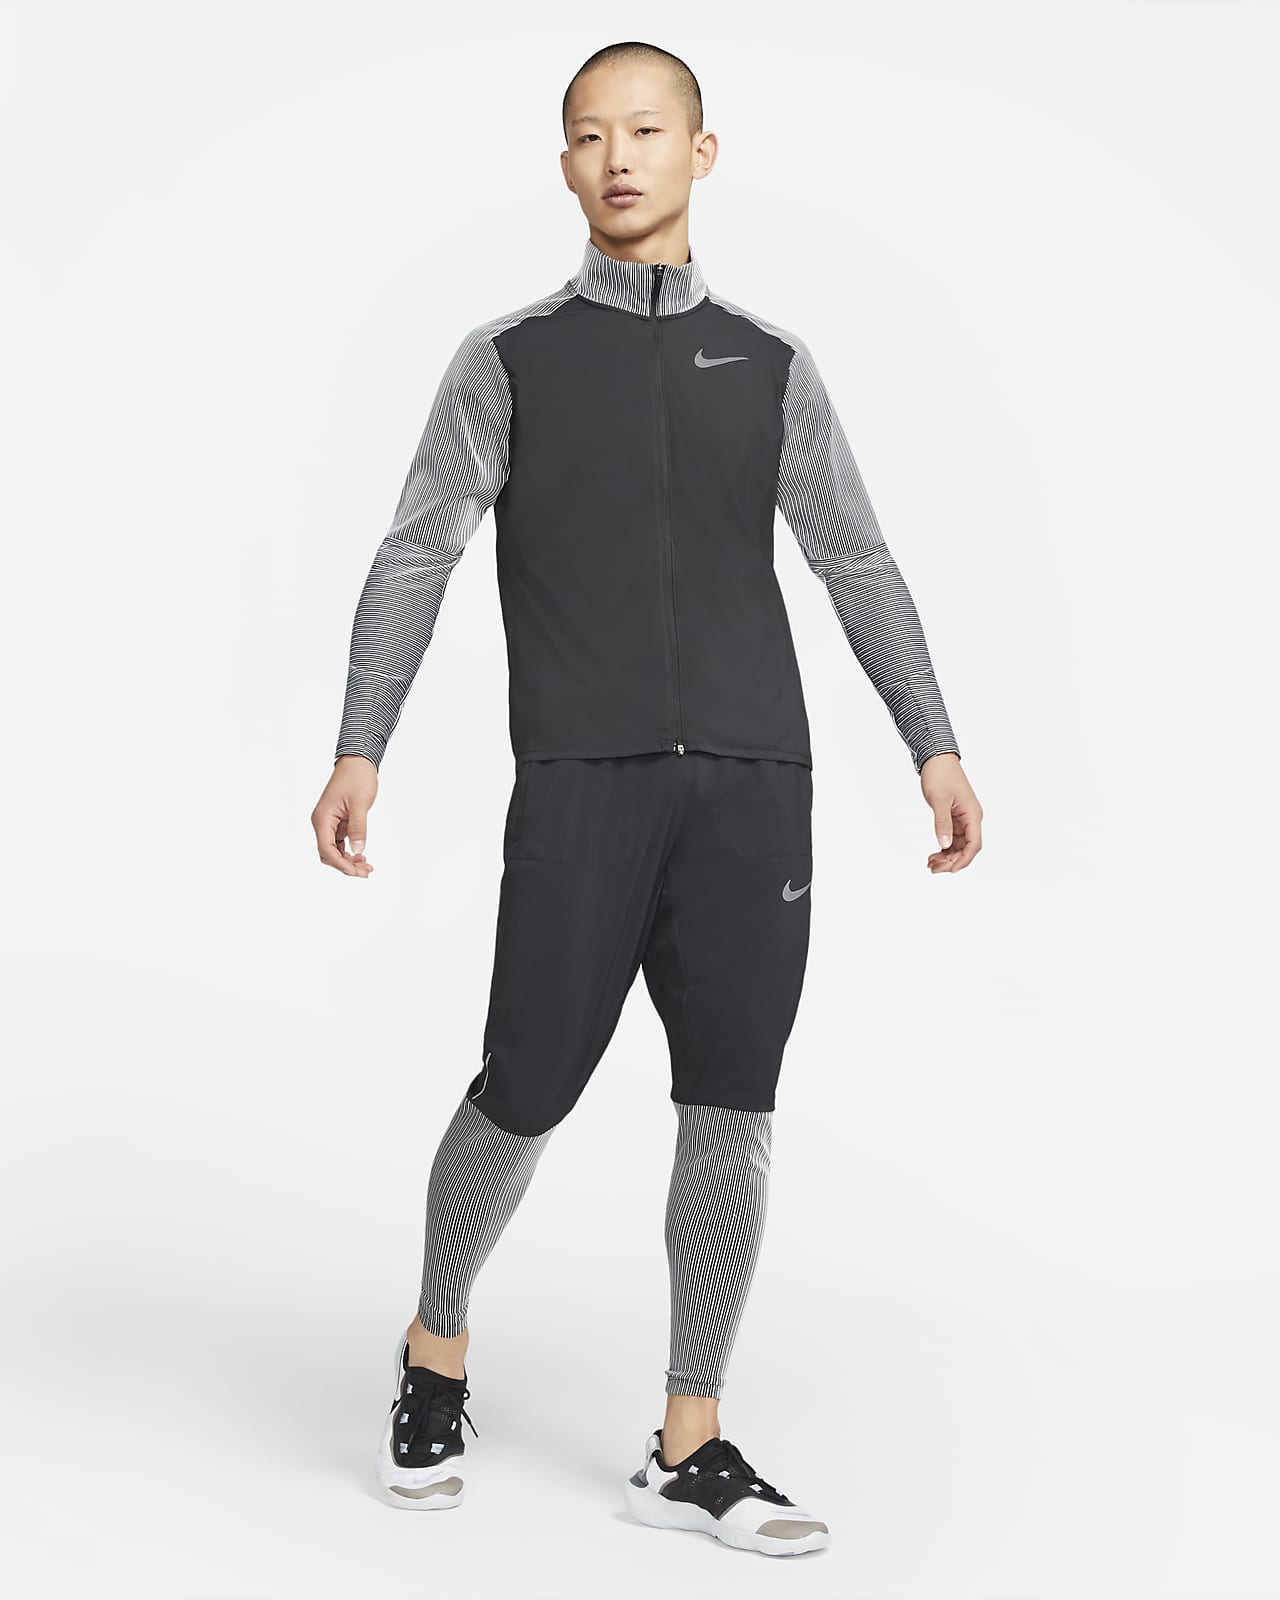 Nike公式 ナイキ エレメント フューチャー ファスト メンズ ハイブリッド ランニングトップ オンラインストア 通販サイト